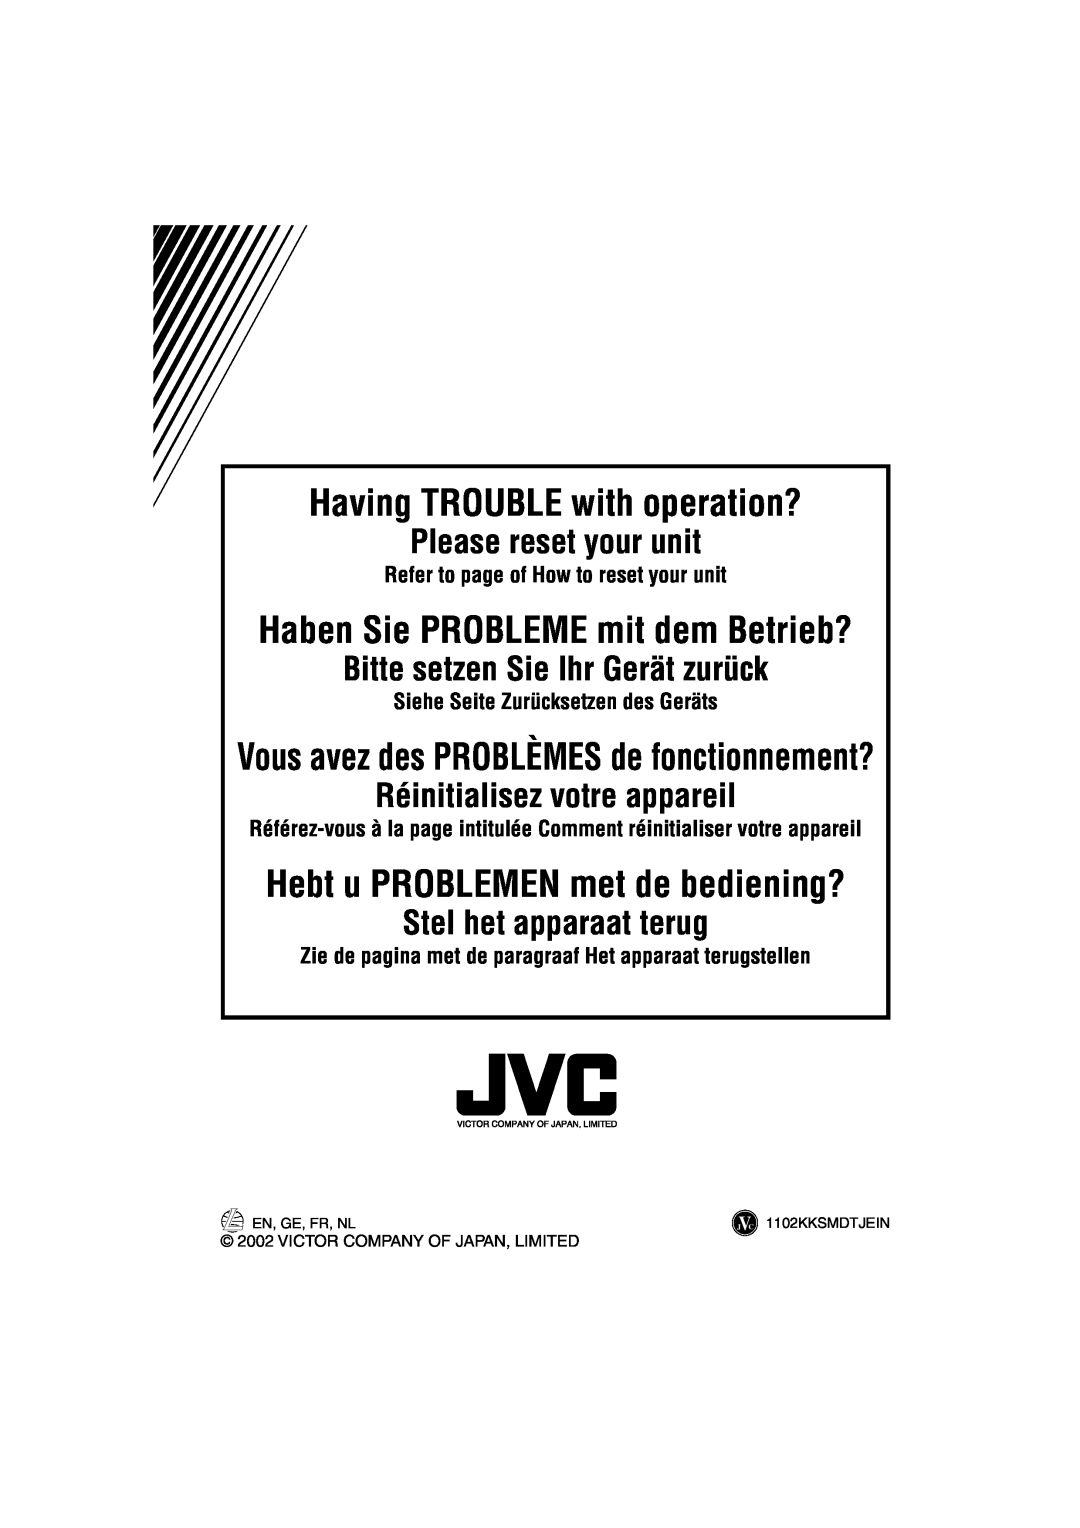 JVC KD-S641 manual Having TROUBLE with operation?, Please reset your unit, Bitte setzen Sie Ihr Gerät zurück 